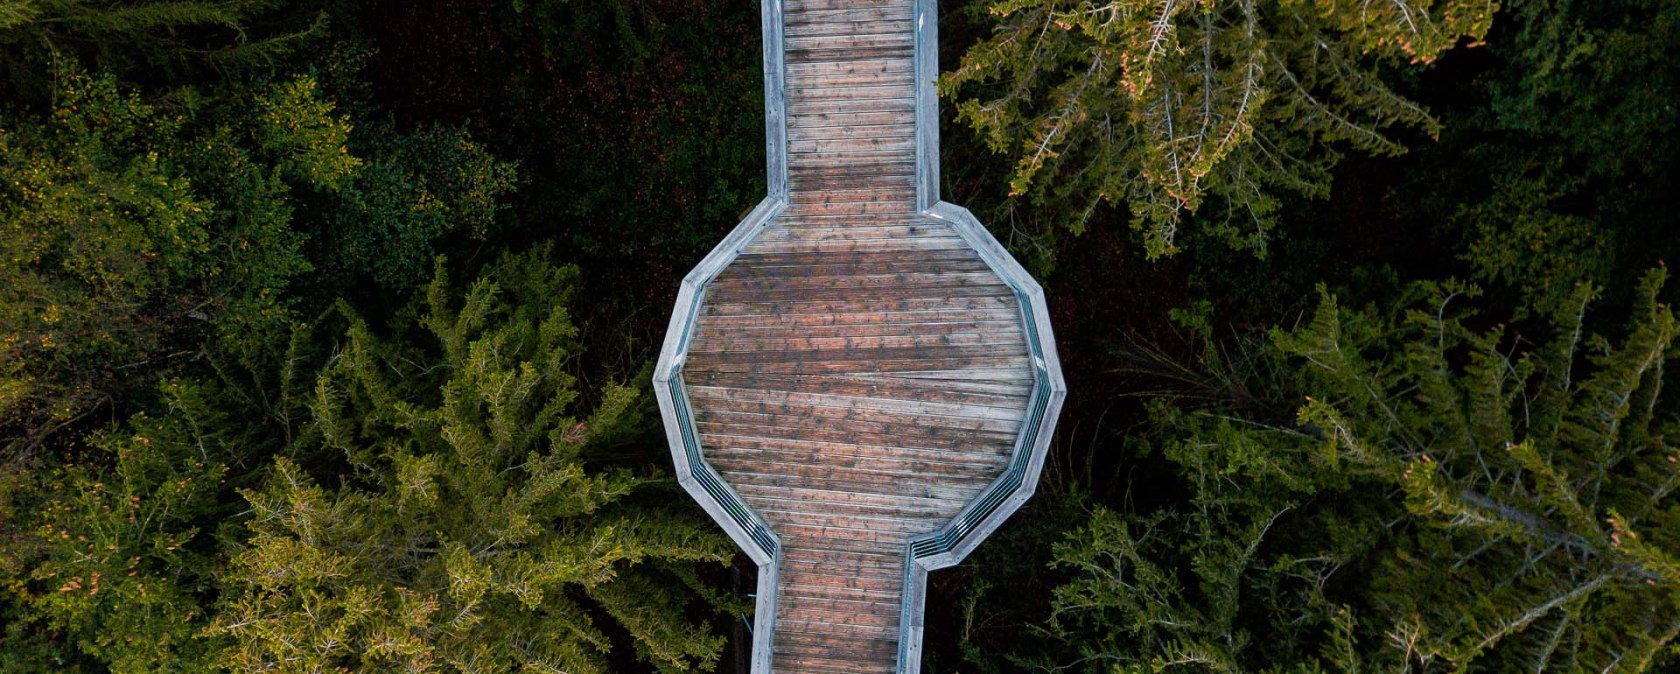 Bird's eye view of Panarbora treetop path, © Tourismus NRW e.V.